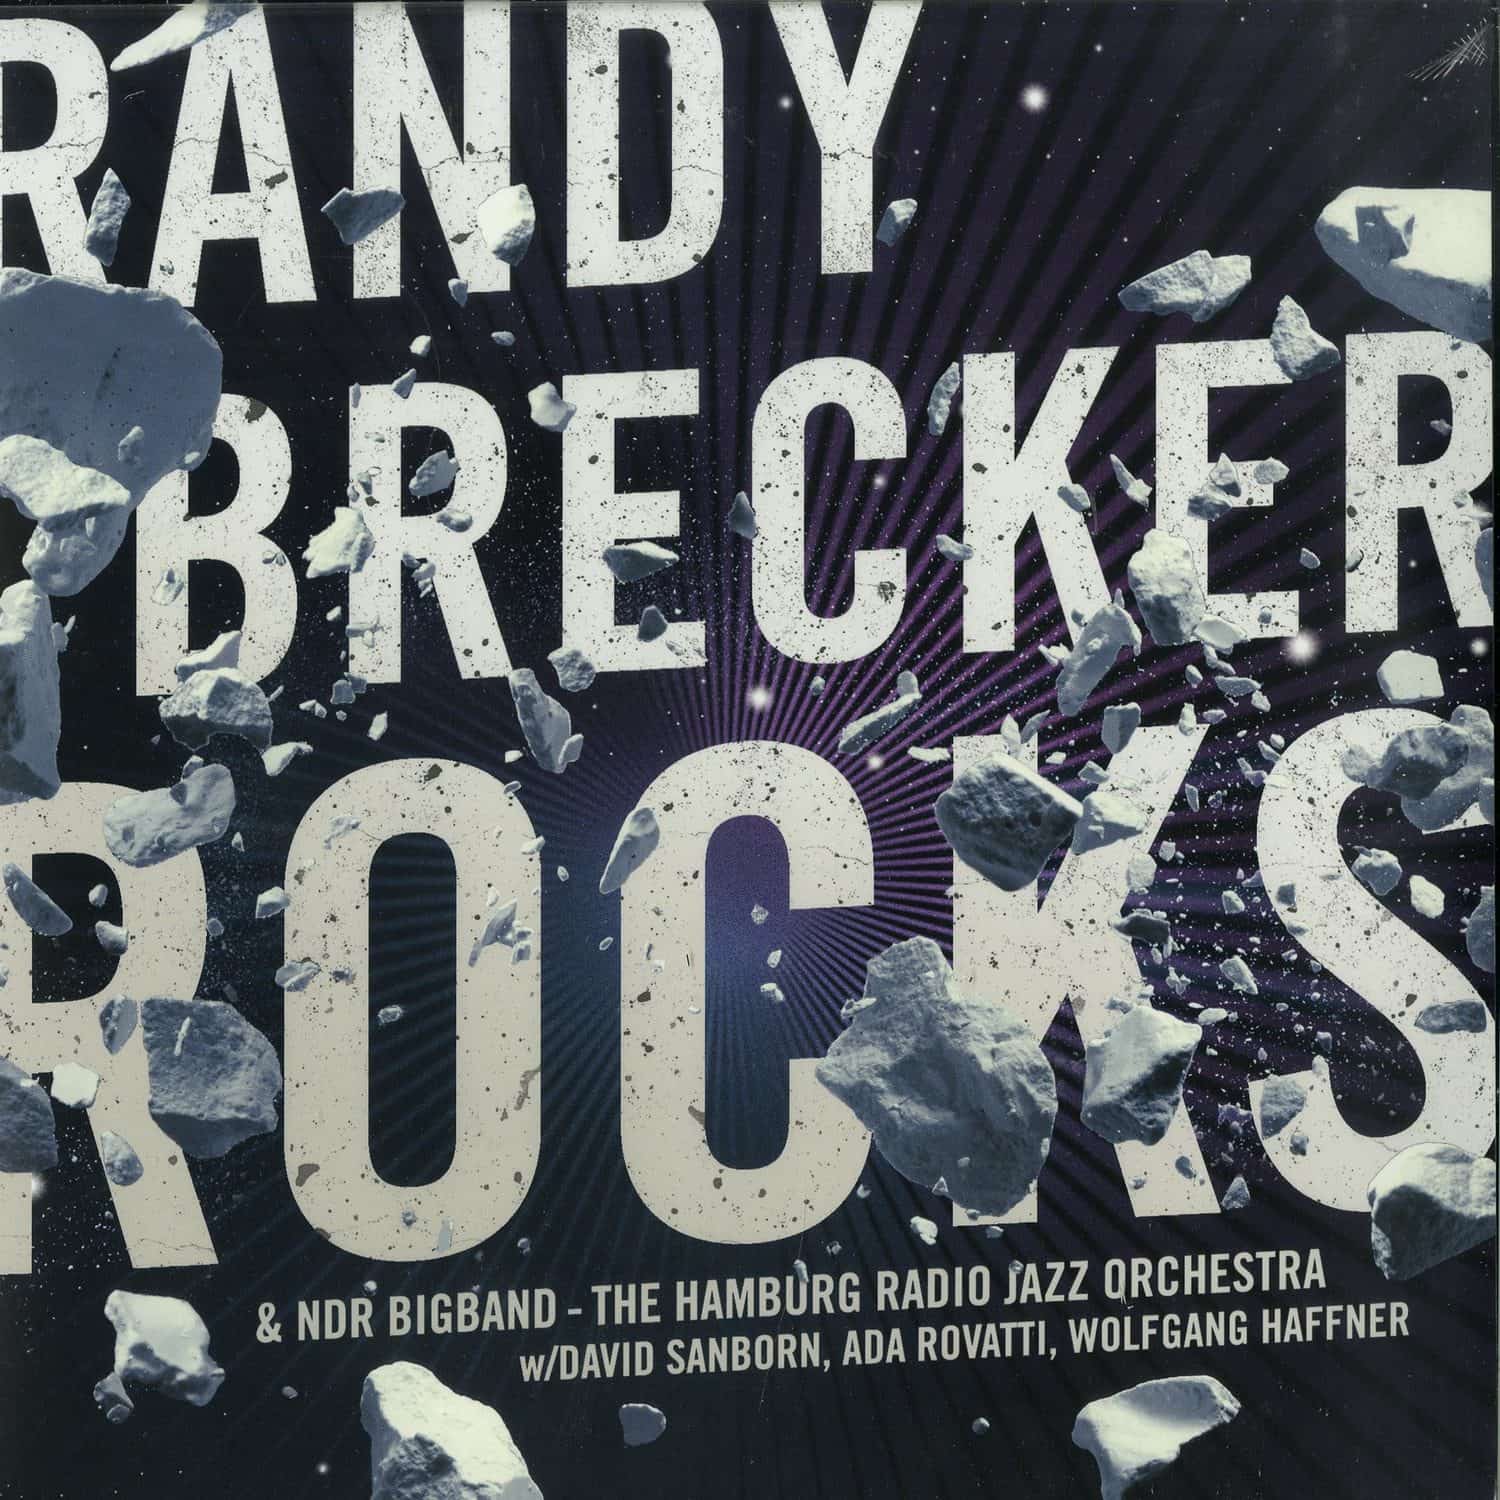 Randy Brecker & NDR Bigband - ROCKS 